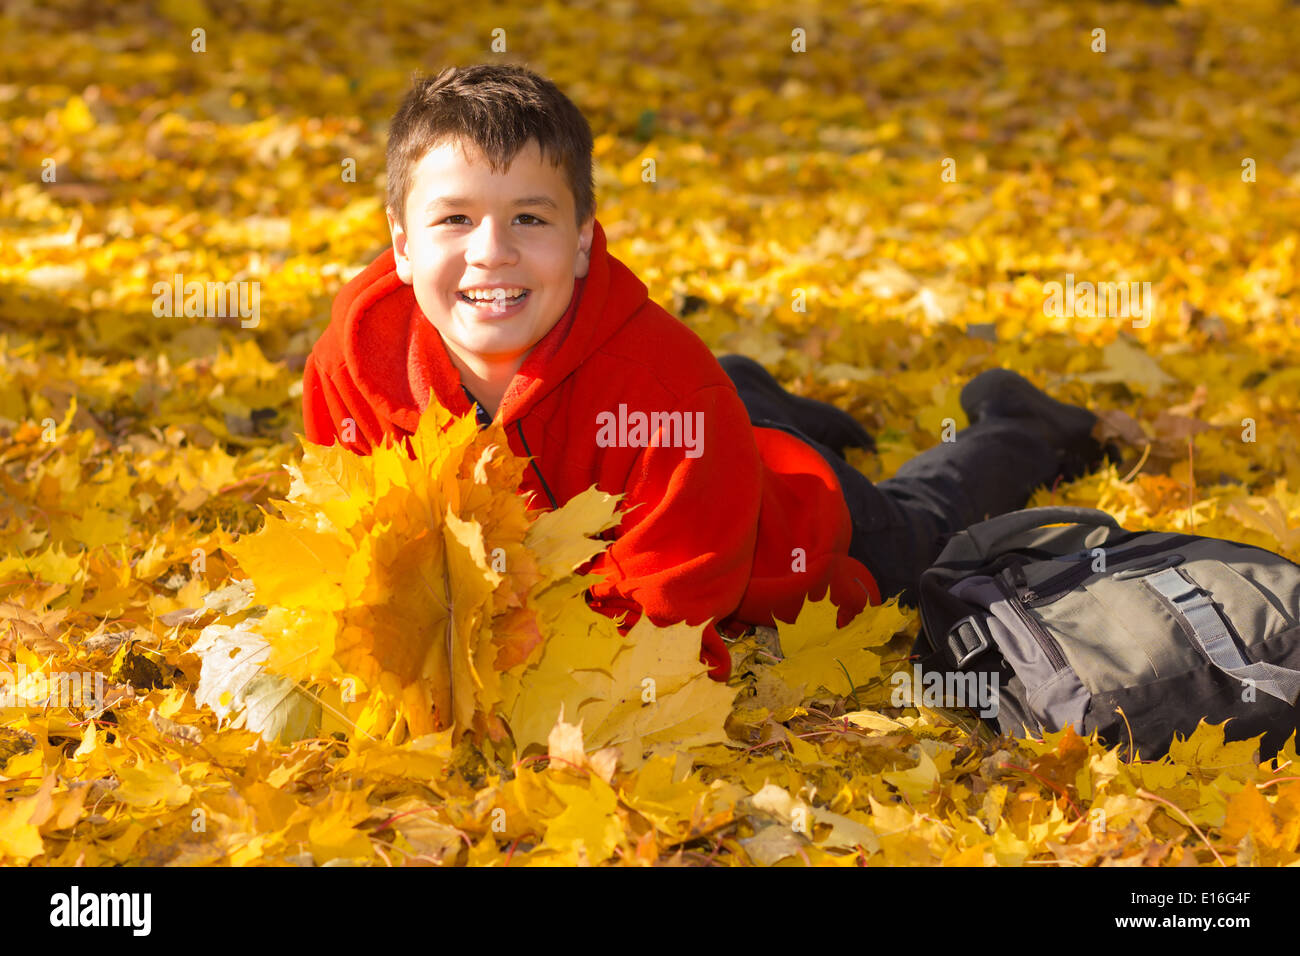 Sorridenti caucasian boy con autunno foglie di acero giacente in una giornata di sole nel parco Foto Stock